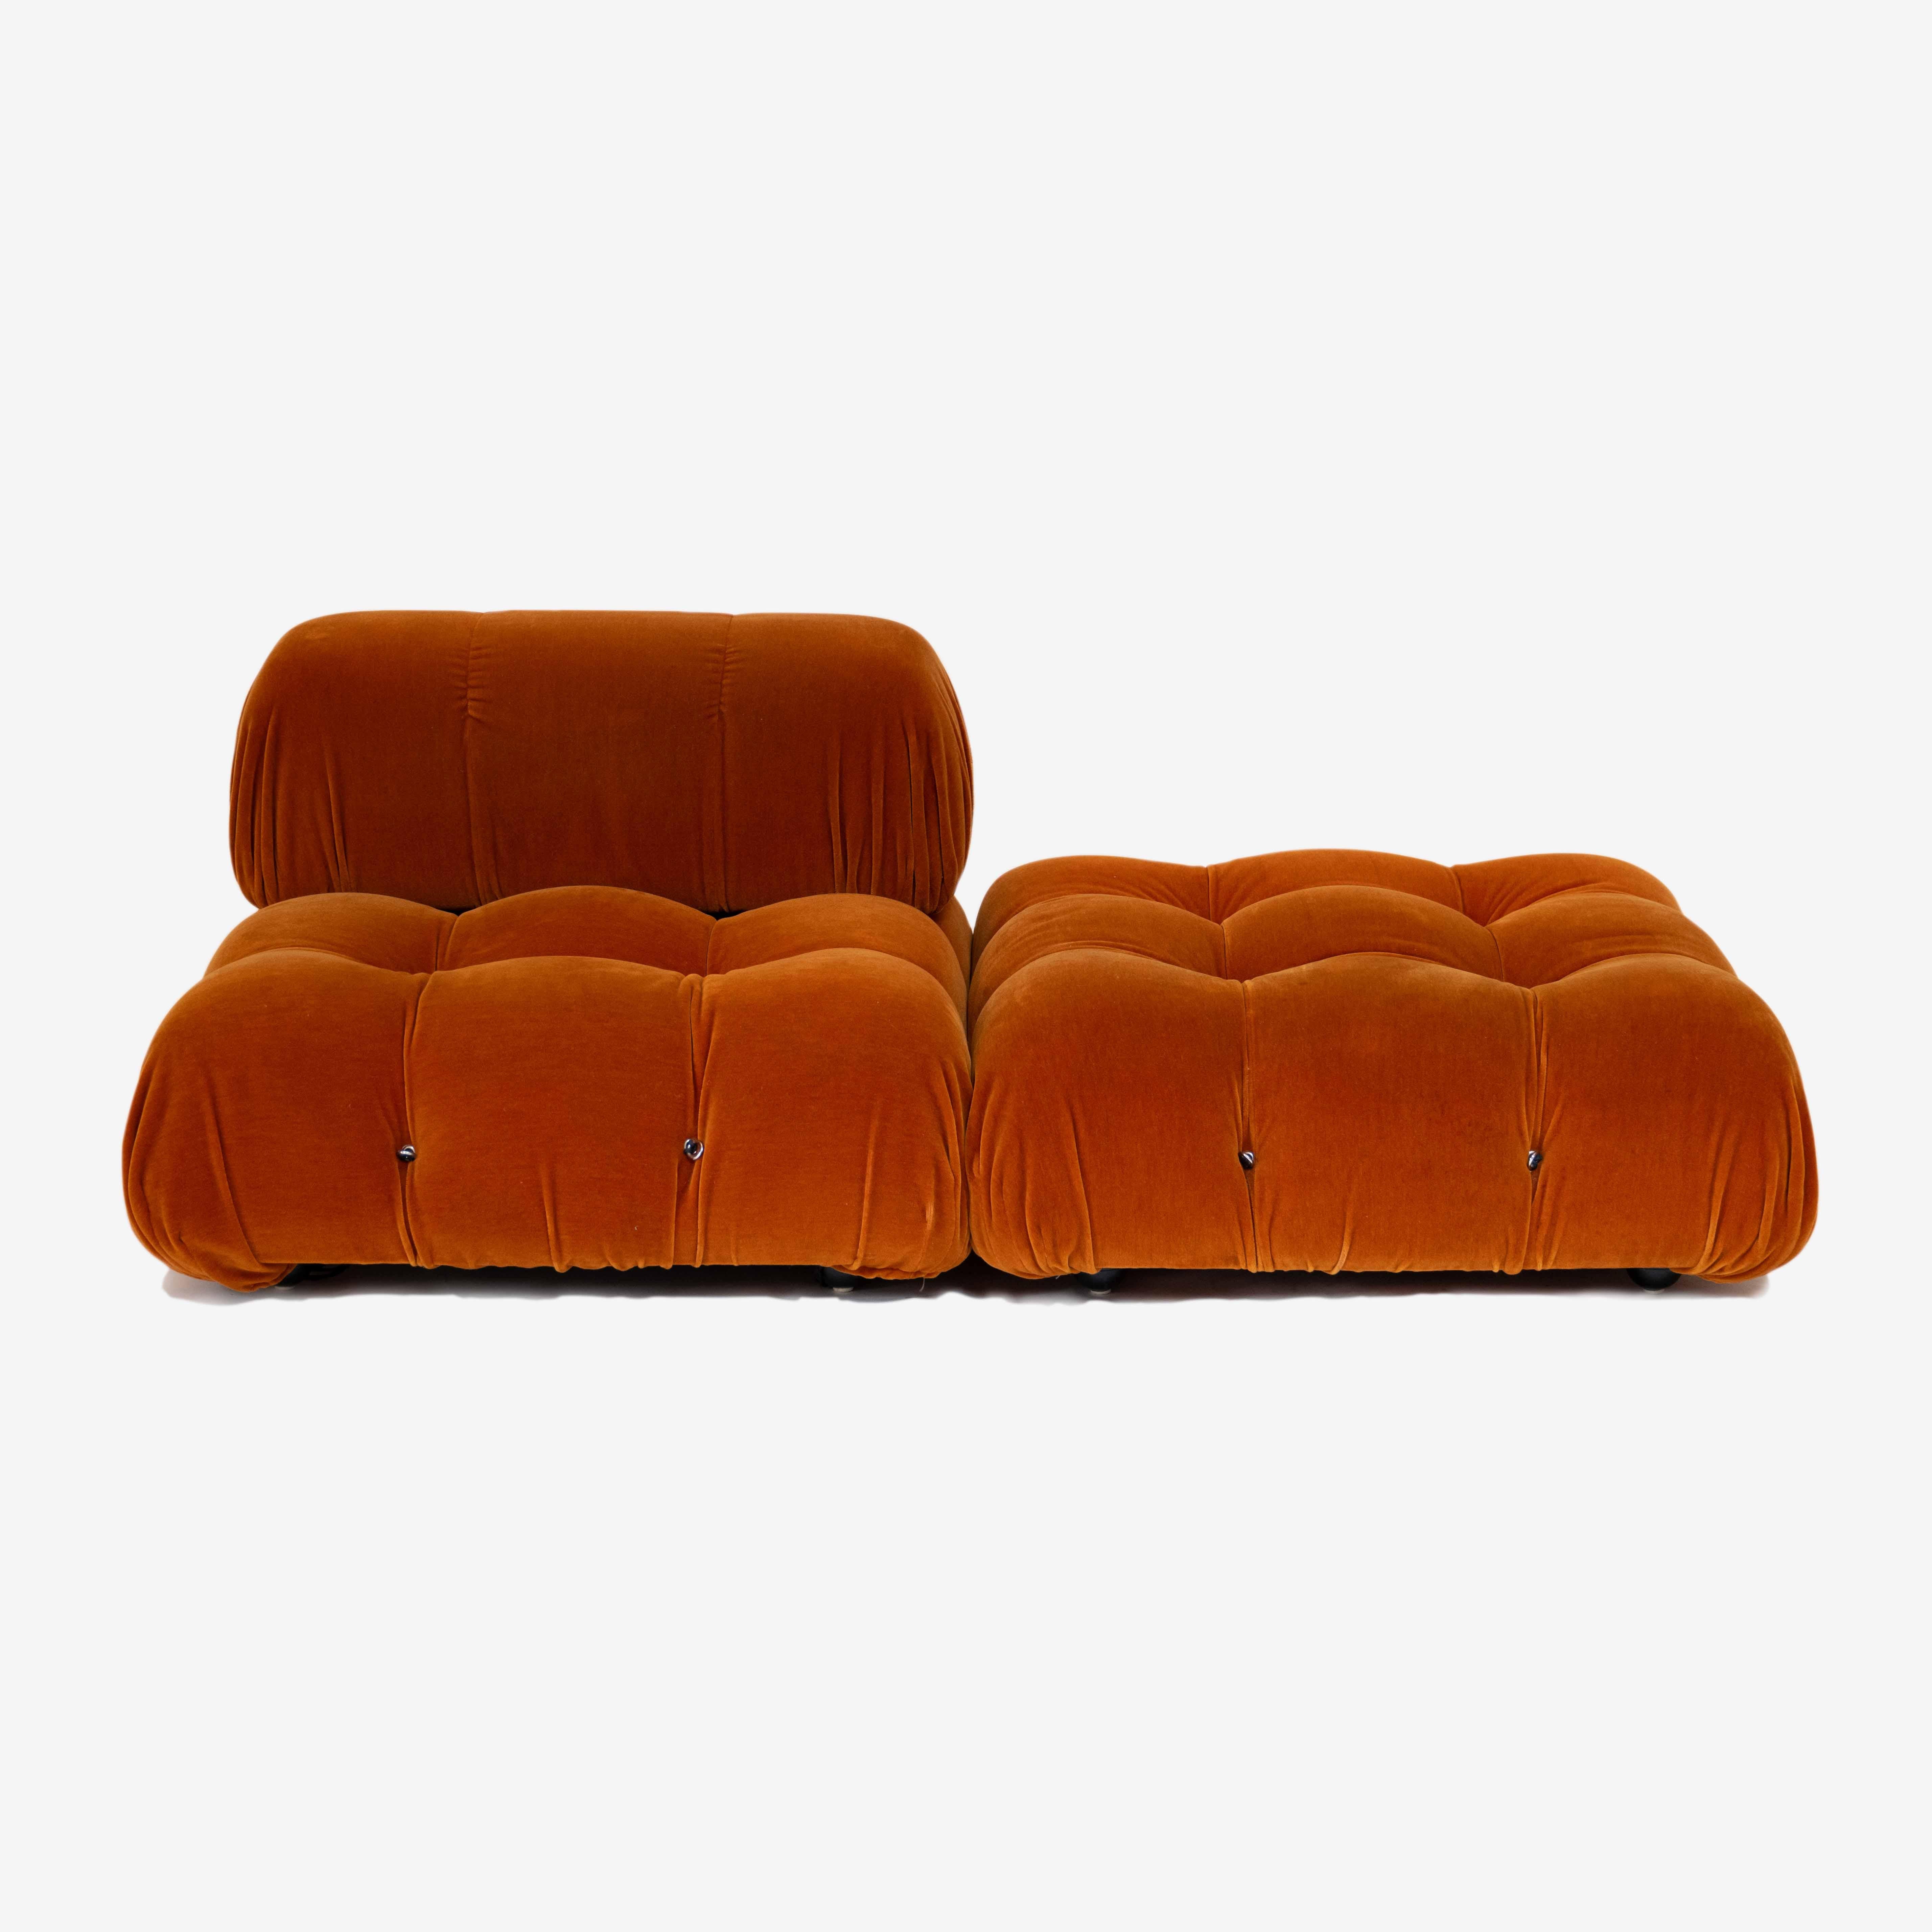 Upholstery Camaleonda Sofa by Mario Bellini for B&B Italia, Italy, 1970s